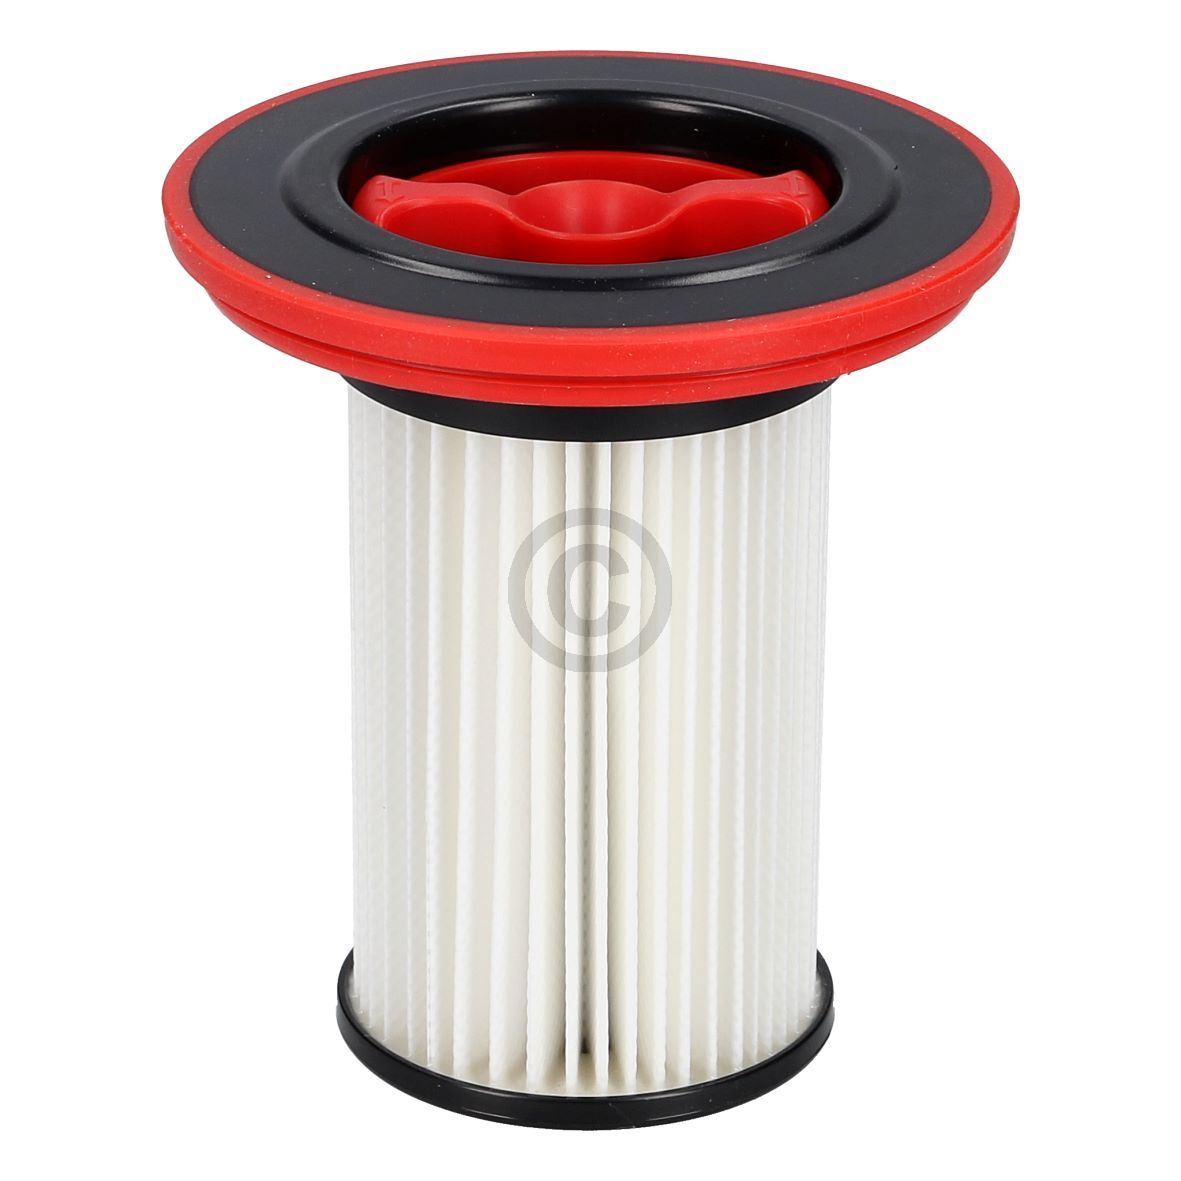 Filterzylinder für Staubbehälter BOSCH 12036642 in Stielstaubsauger